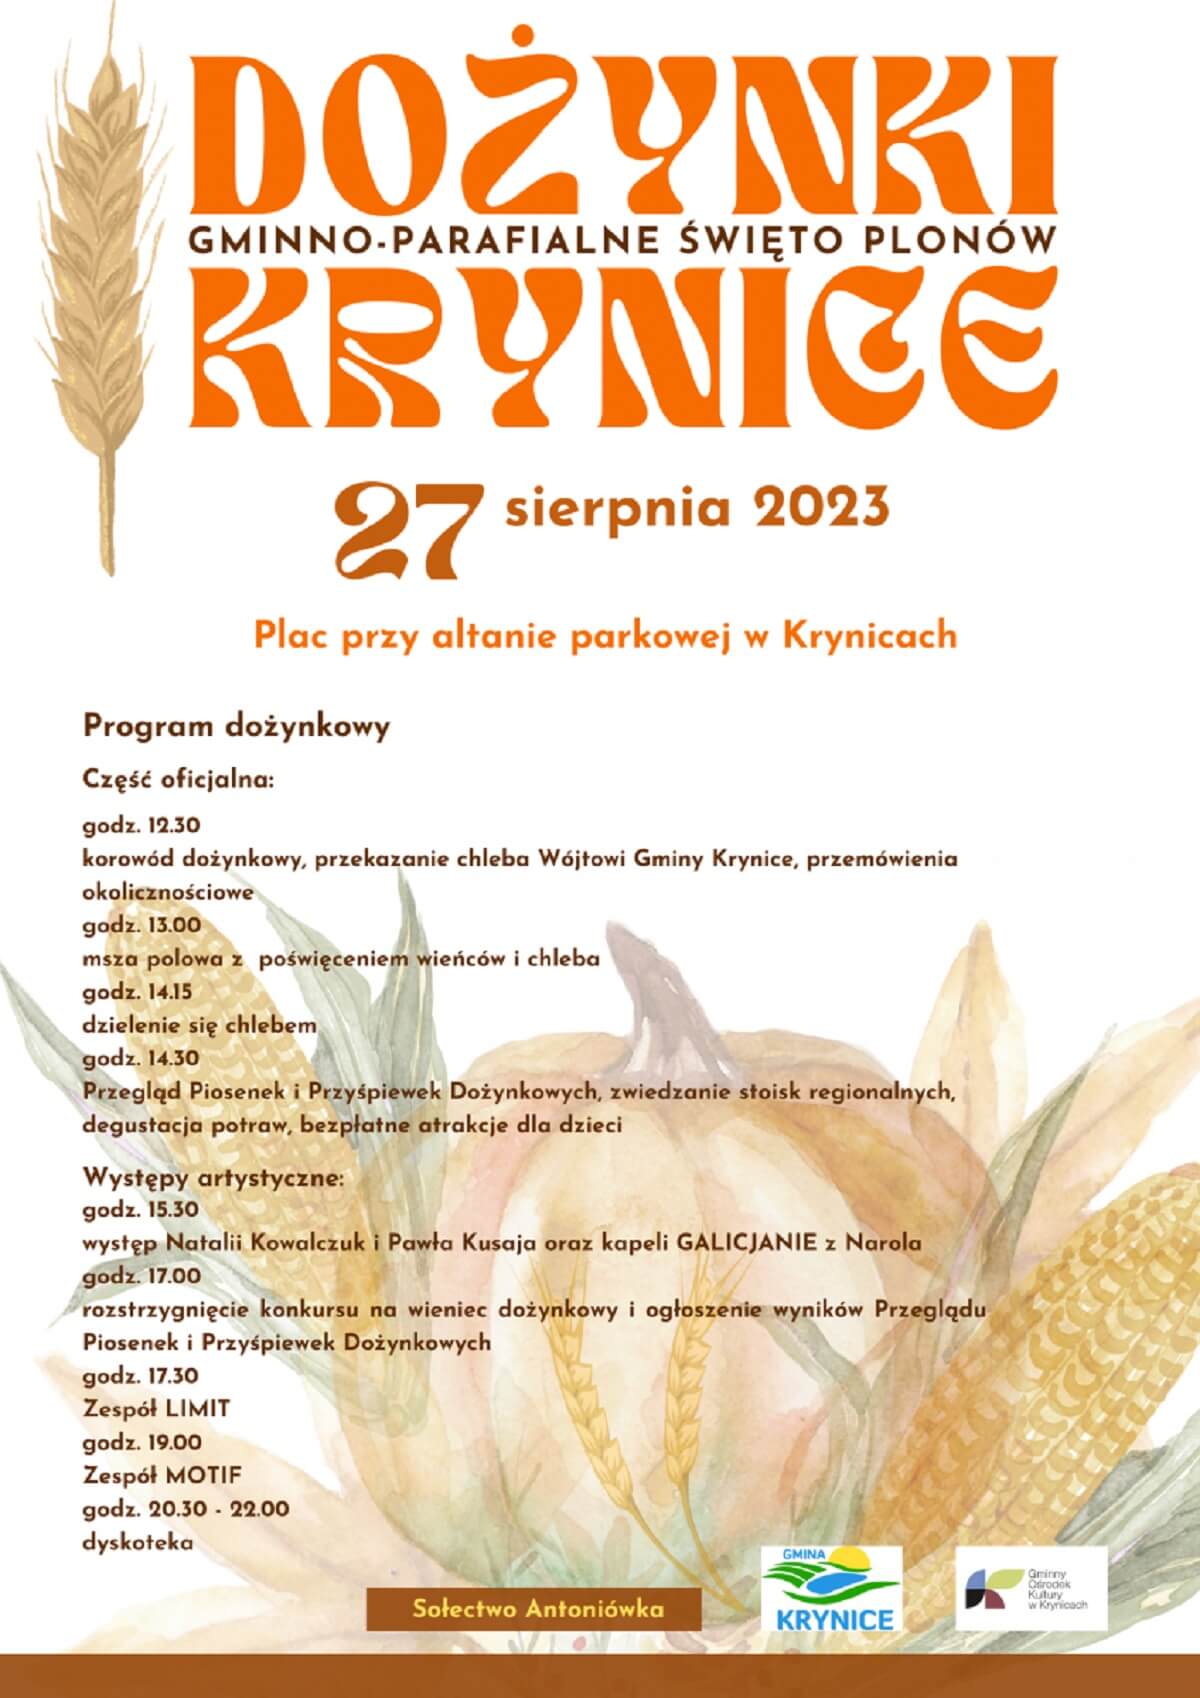 Dożynki w Krynicach 2023 - plakat, program wydarzenia